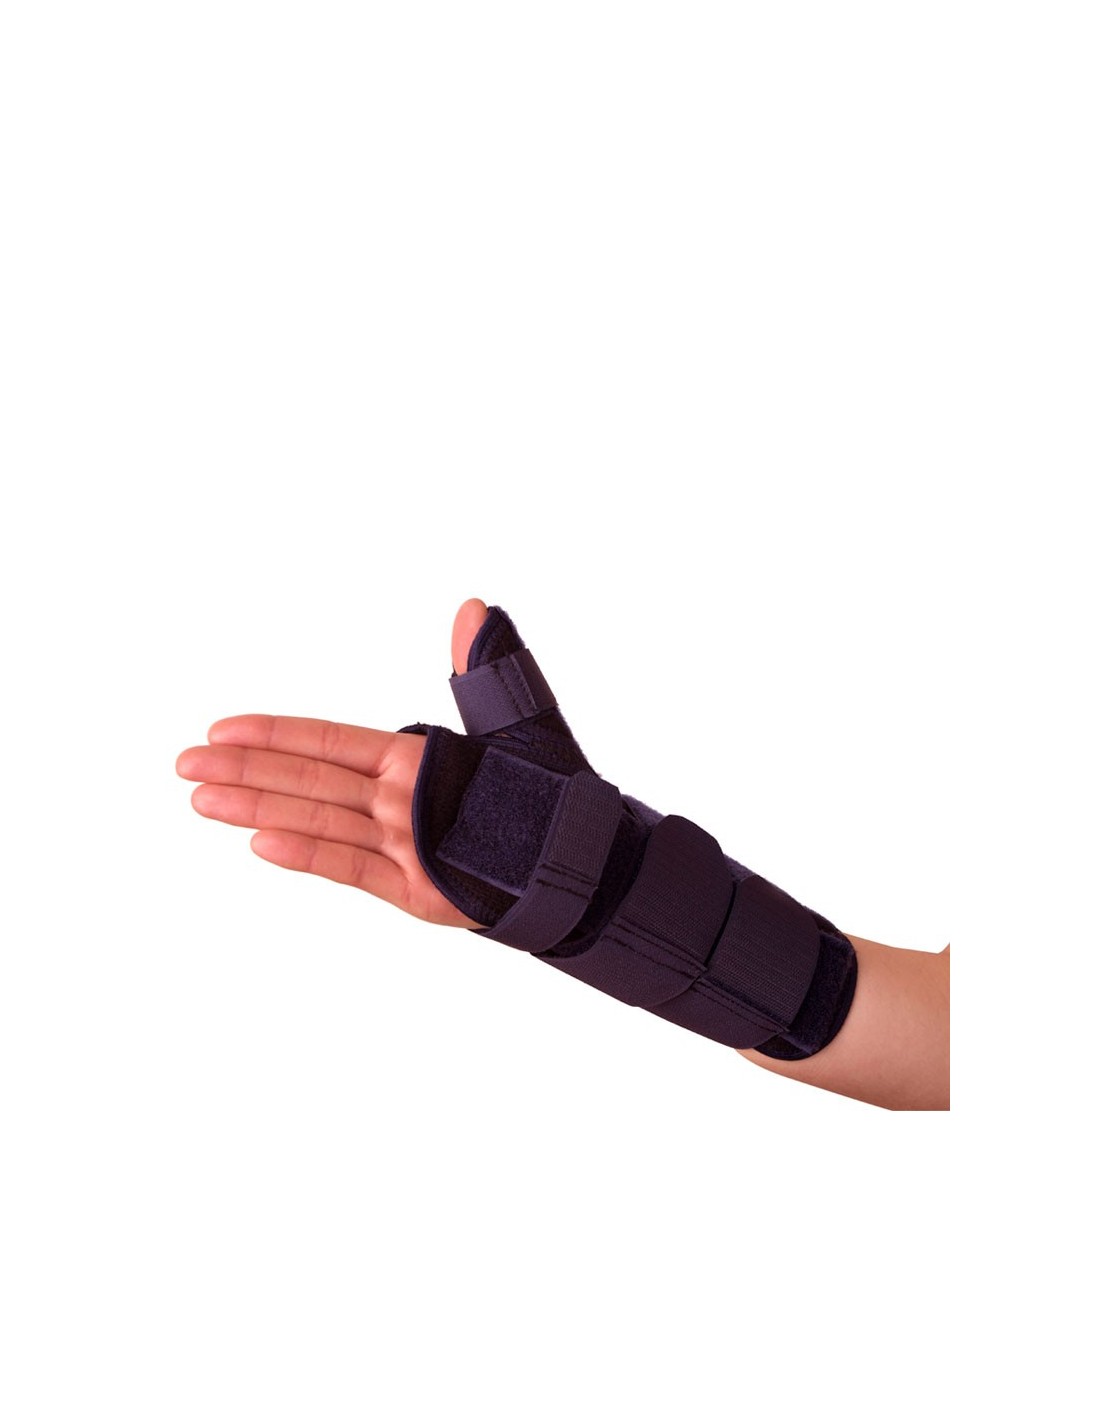 Muñequera ortopedica, Para mano y dedo